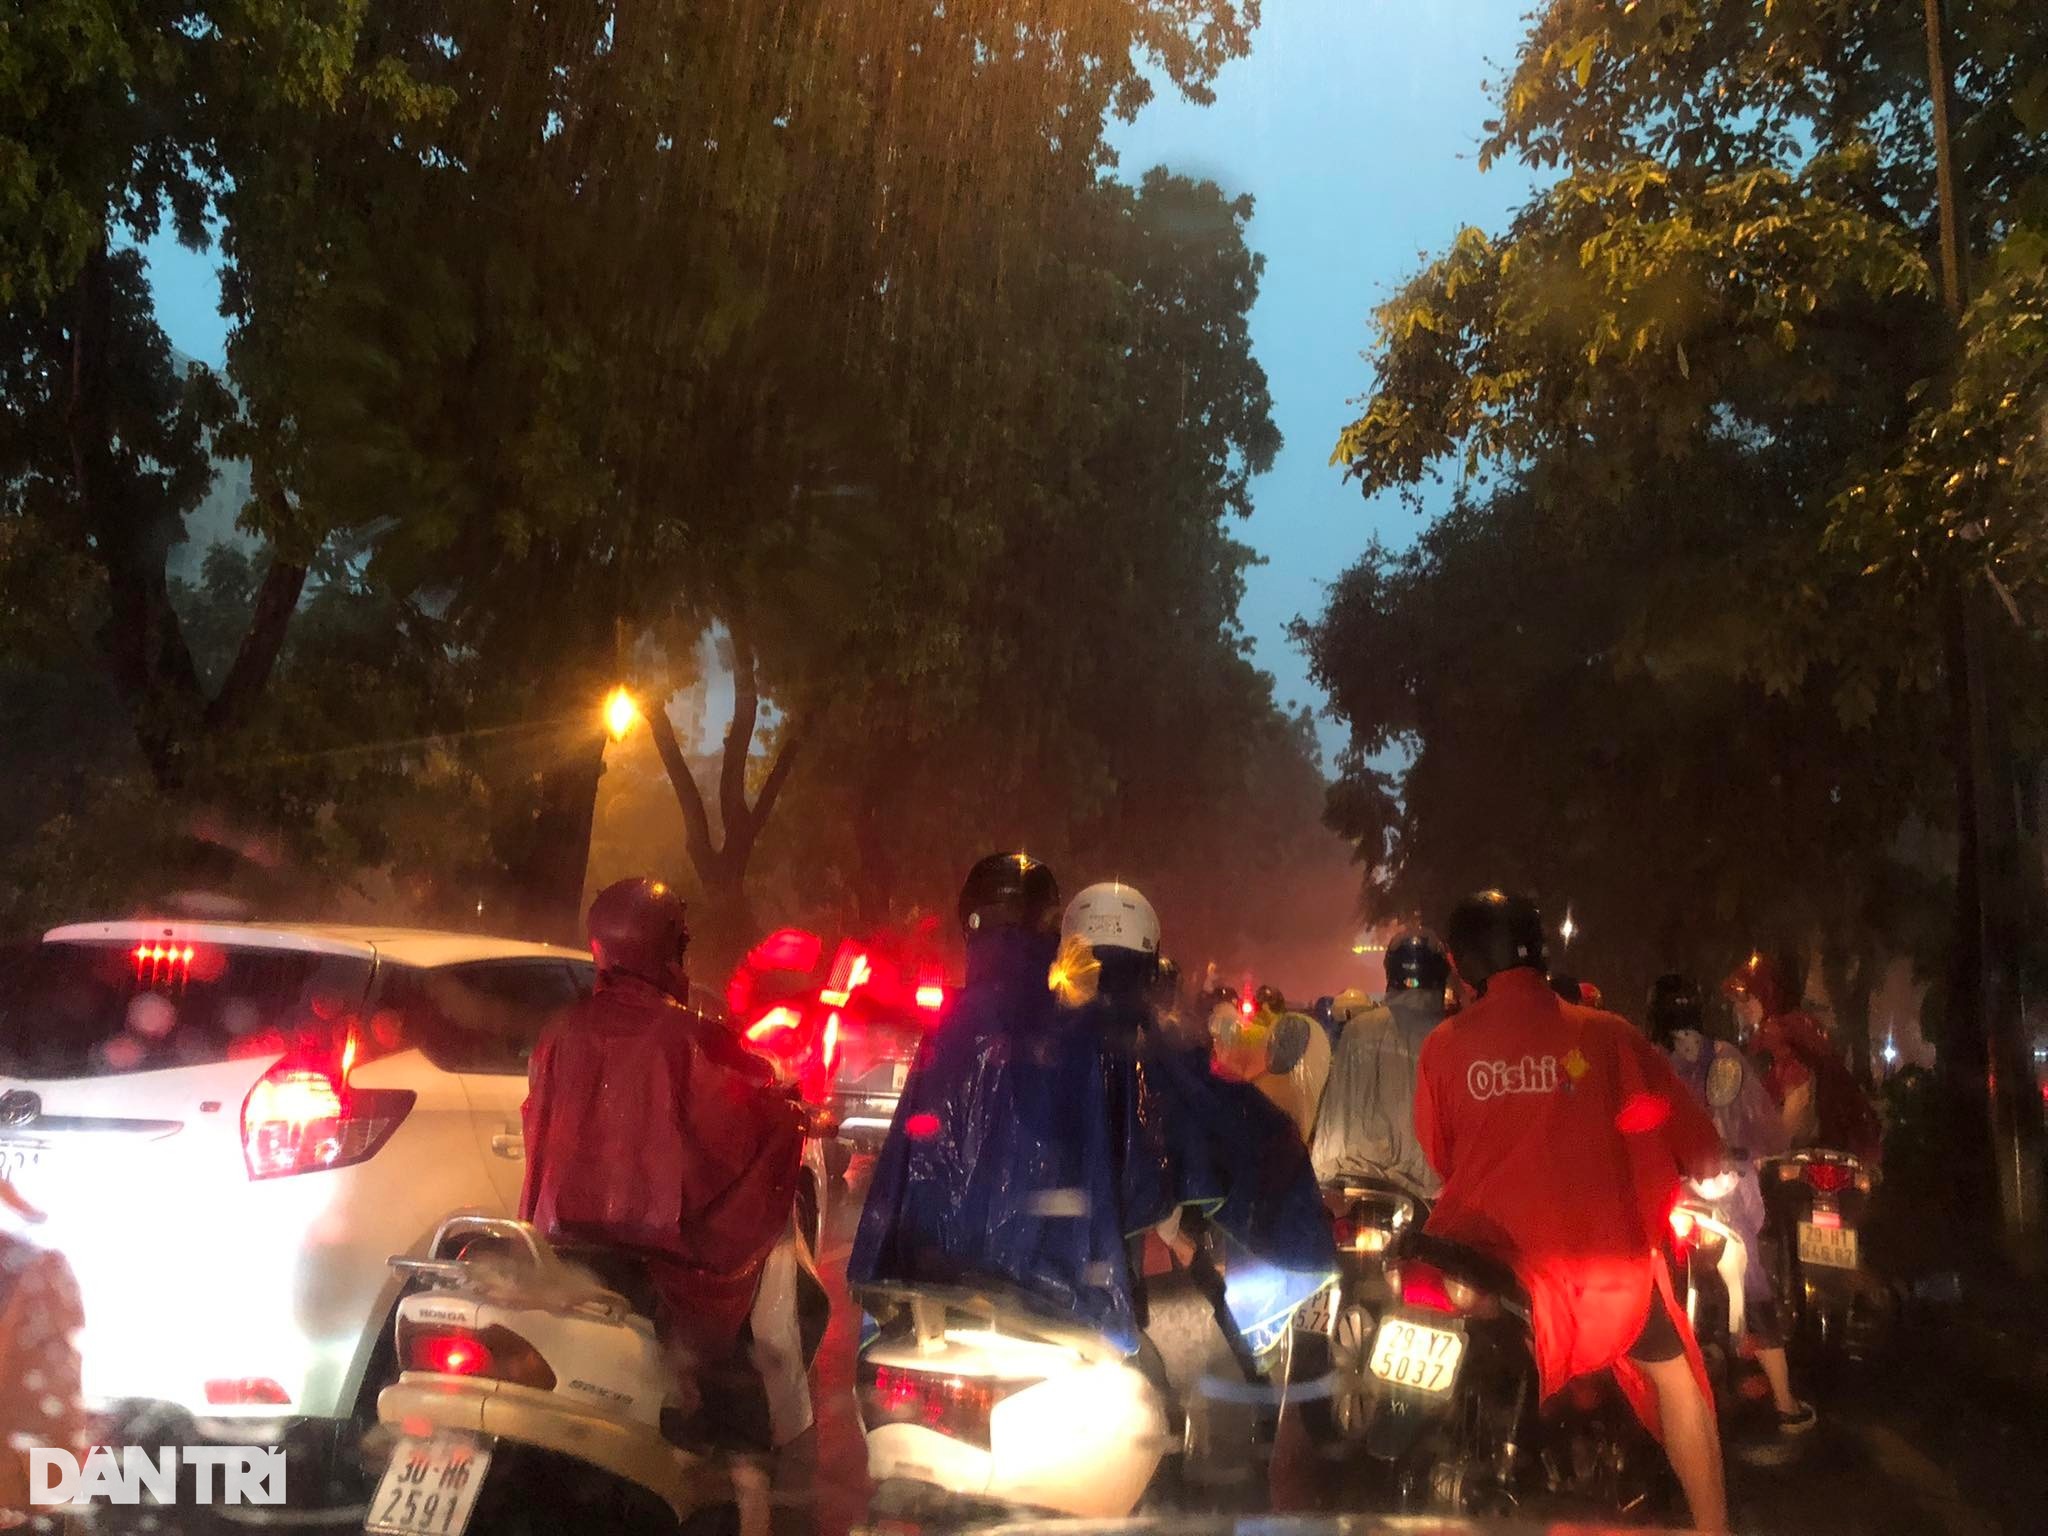 Cơn mưa lớn sầm sập đổ xuống, người Hà Nội chôn chân trên đường ngập - 8